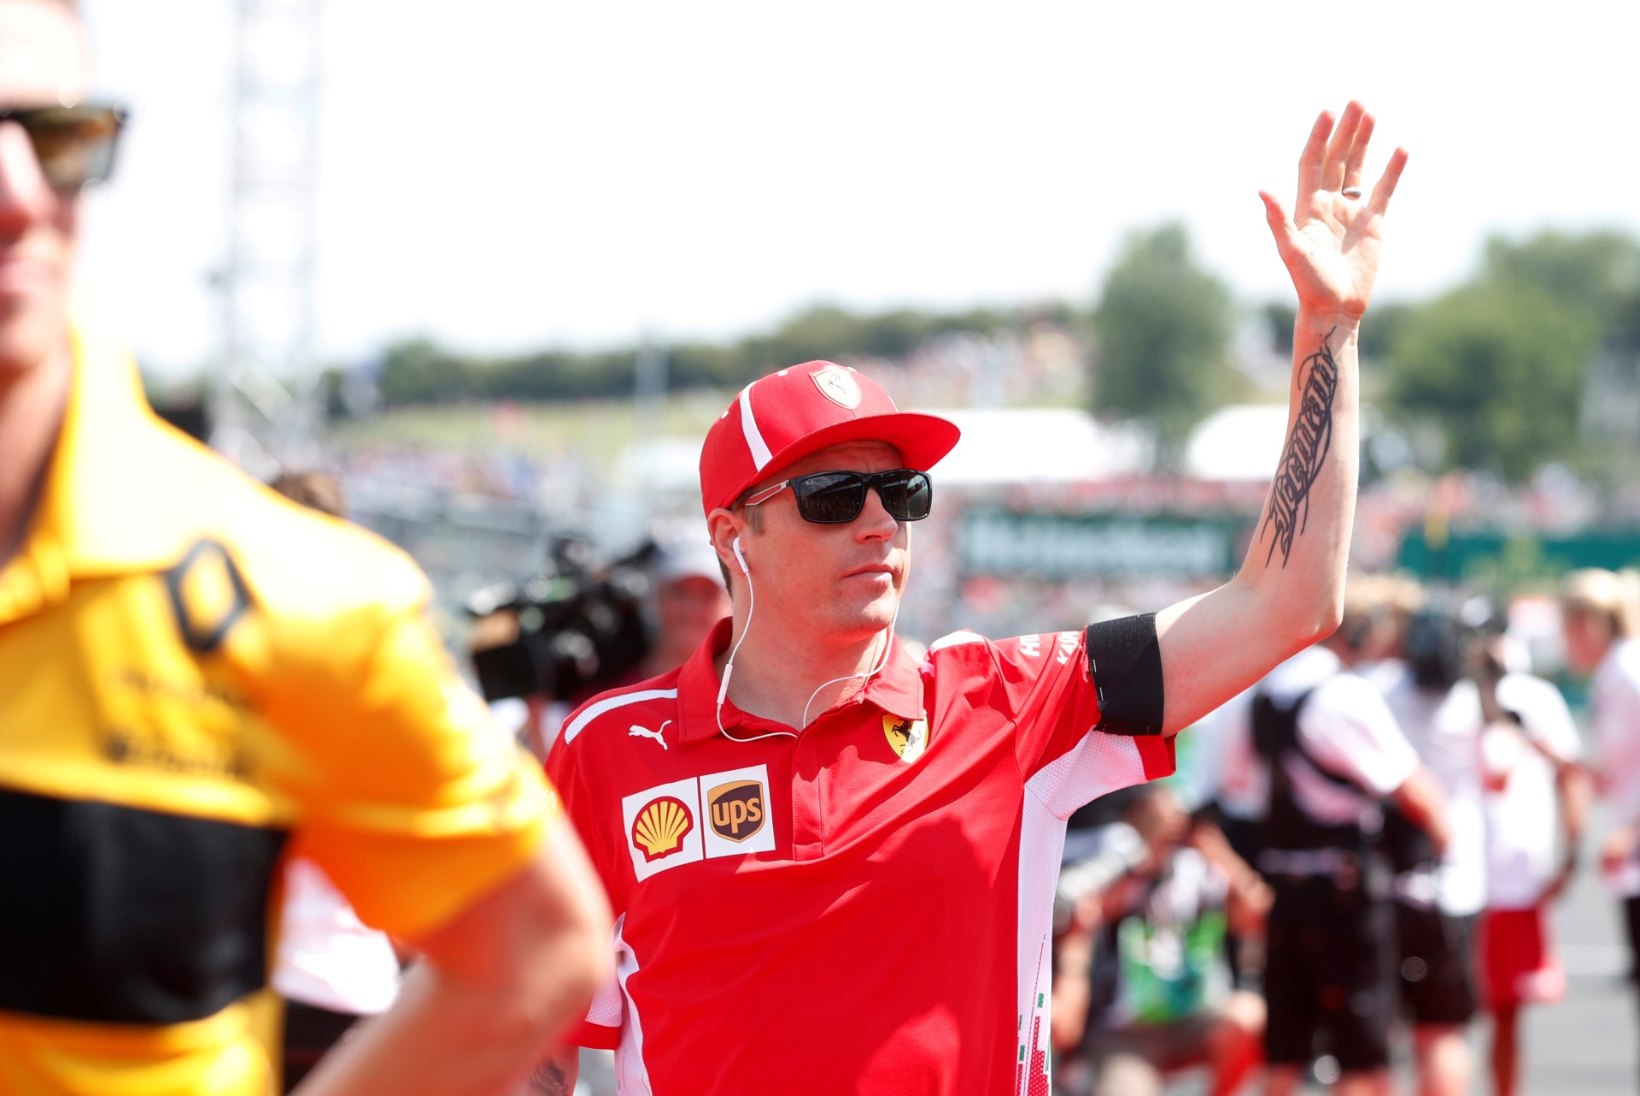 Ferrari otsib kompromissi: Räikkönenile antakse kinga, aga Vettelit ta enam aitama ei pea